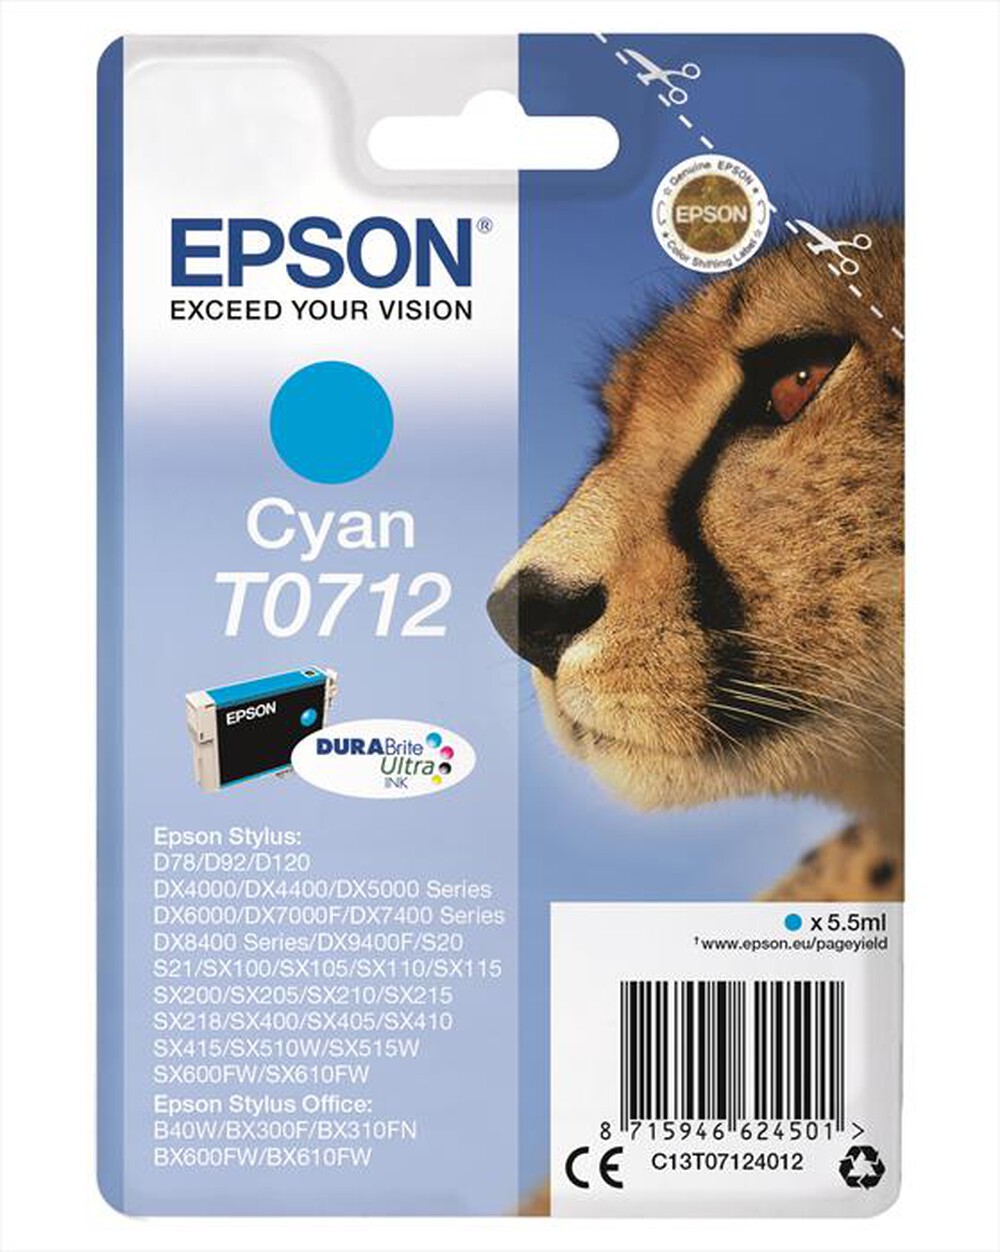 "EPSON - Cartuccia inchiostro ciano C13T07124021-Ciano"